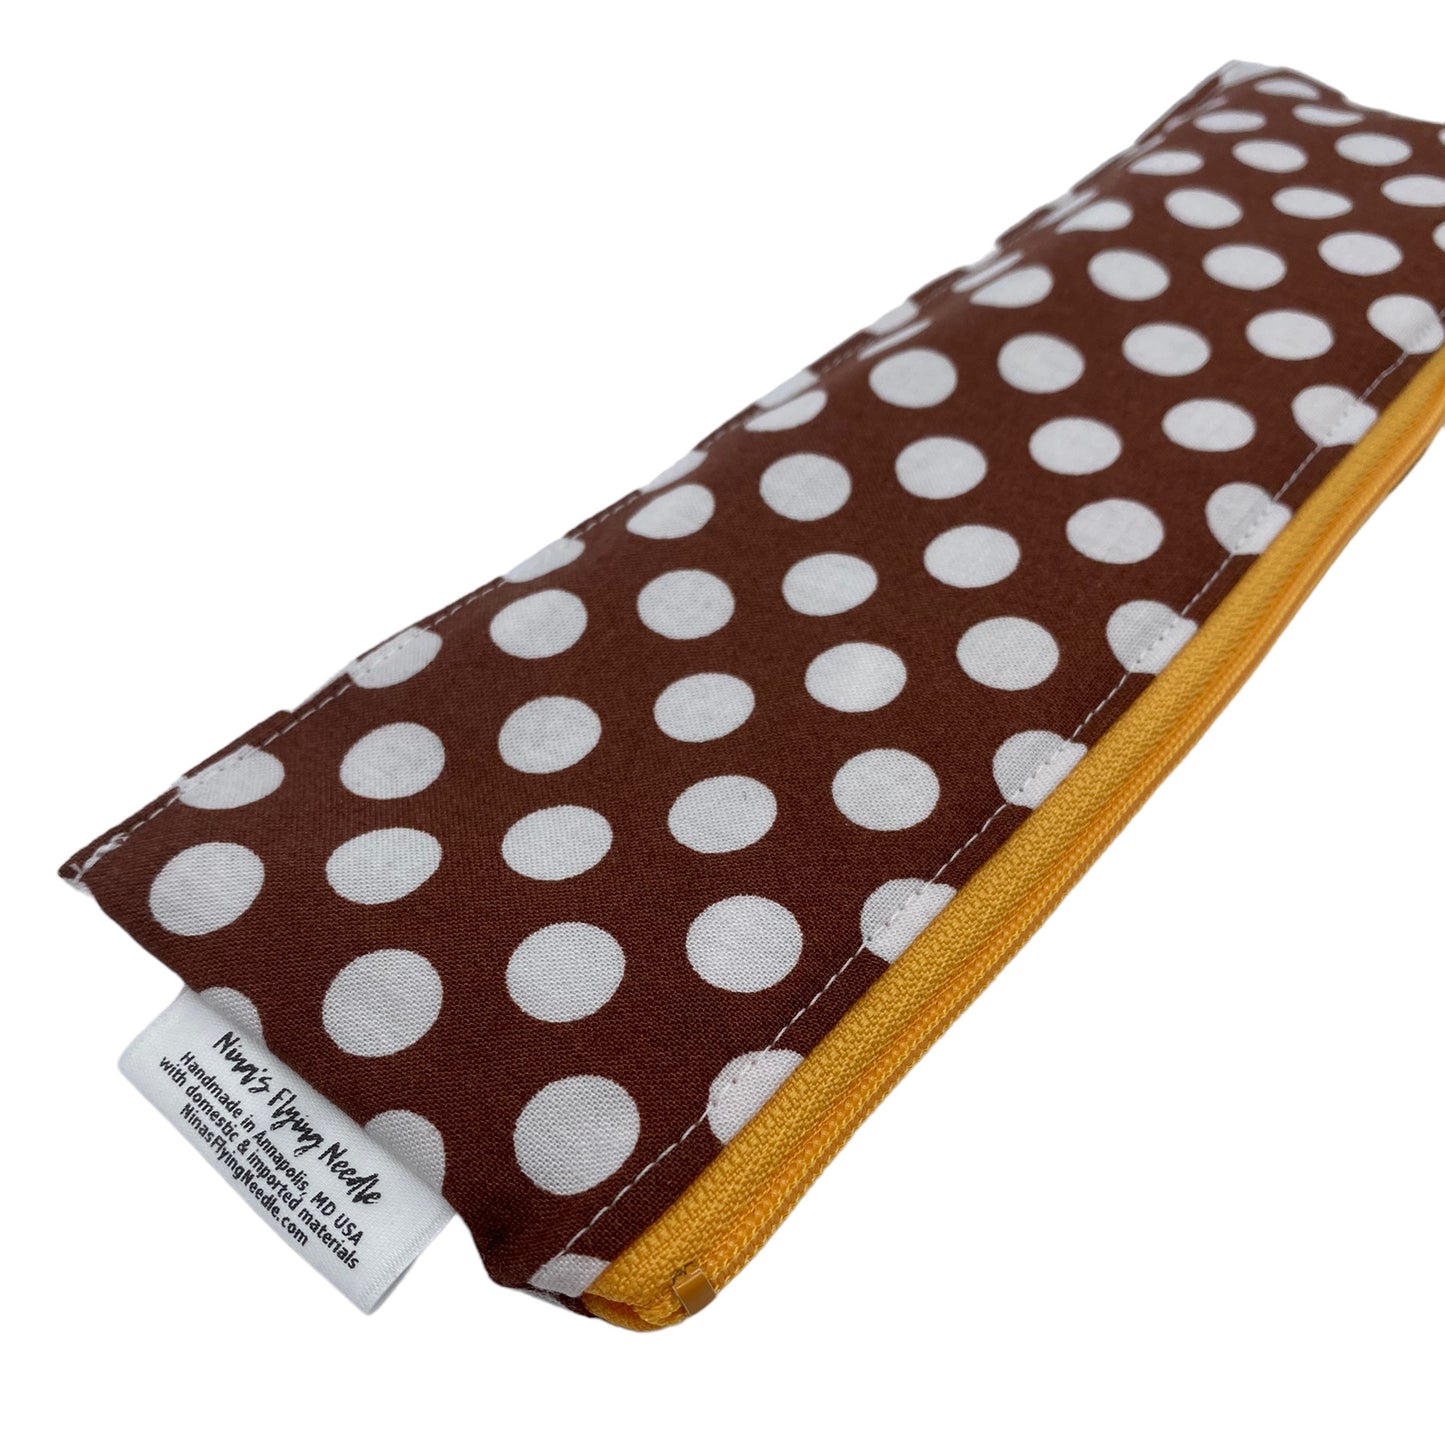 Regular Sized Reusable Straw/Utensil Wet Bag Polka Dots on Brown